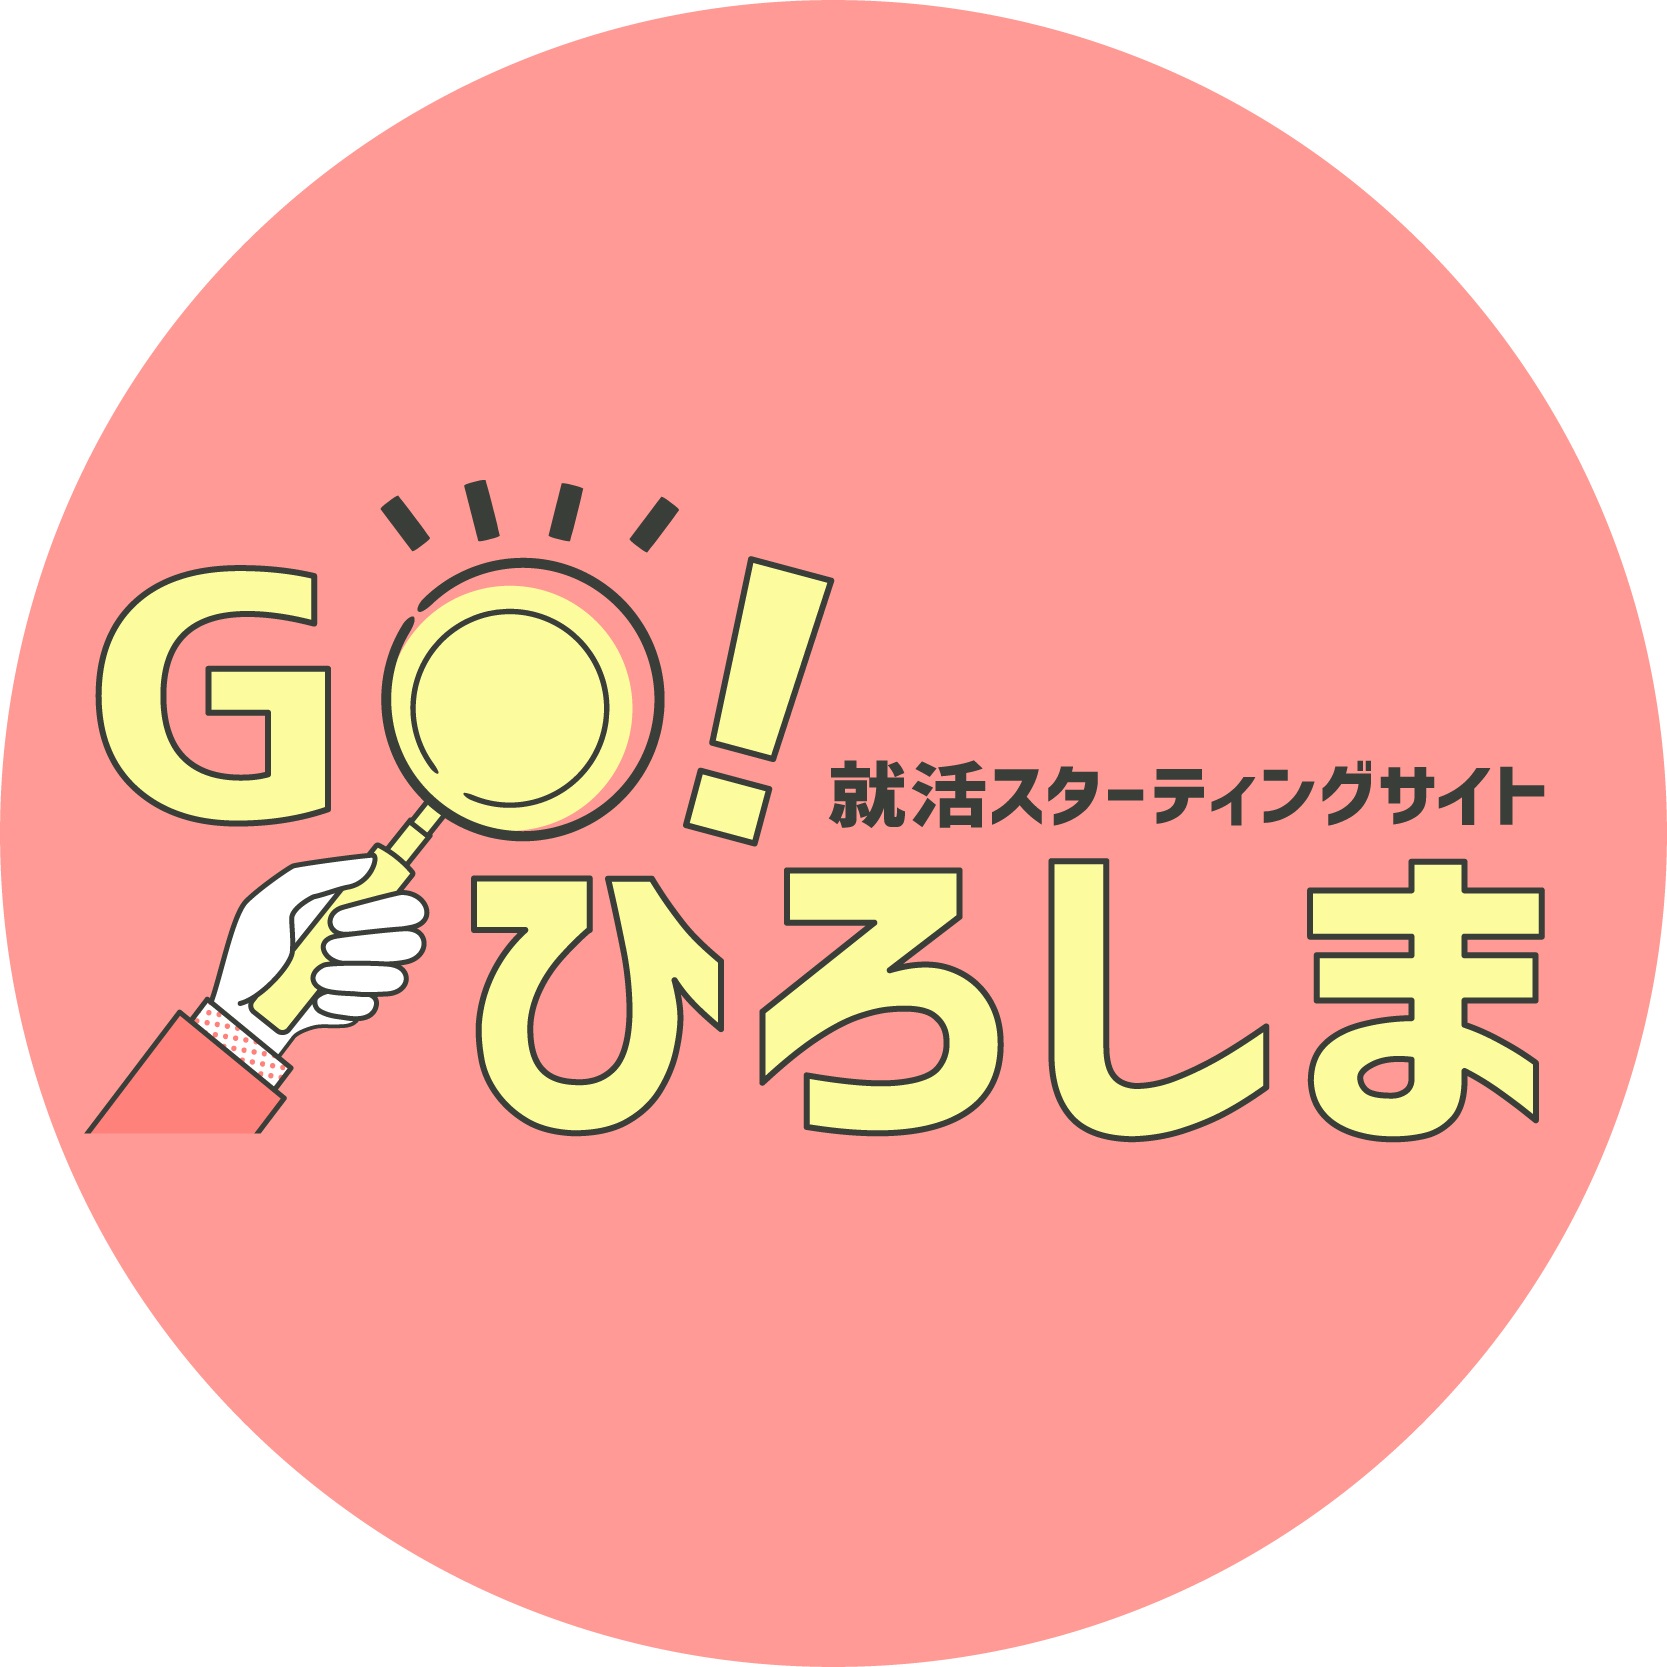 ひろしま就活応援サイト 「Go!ひろしま」 SNSアイコン